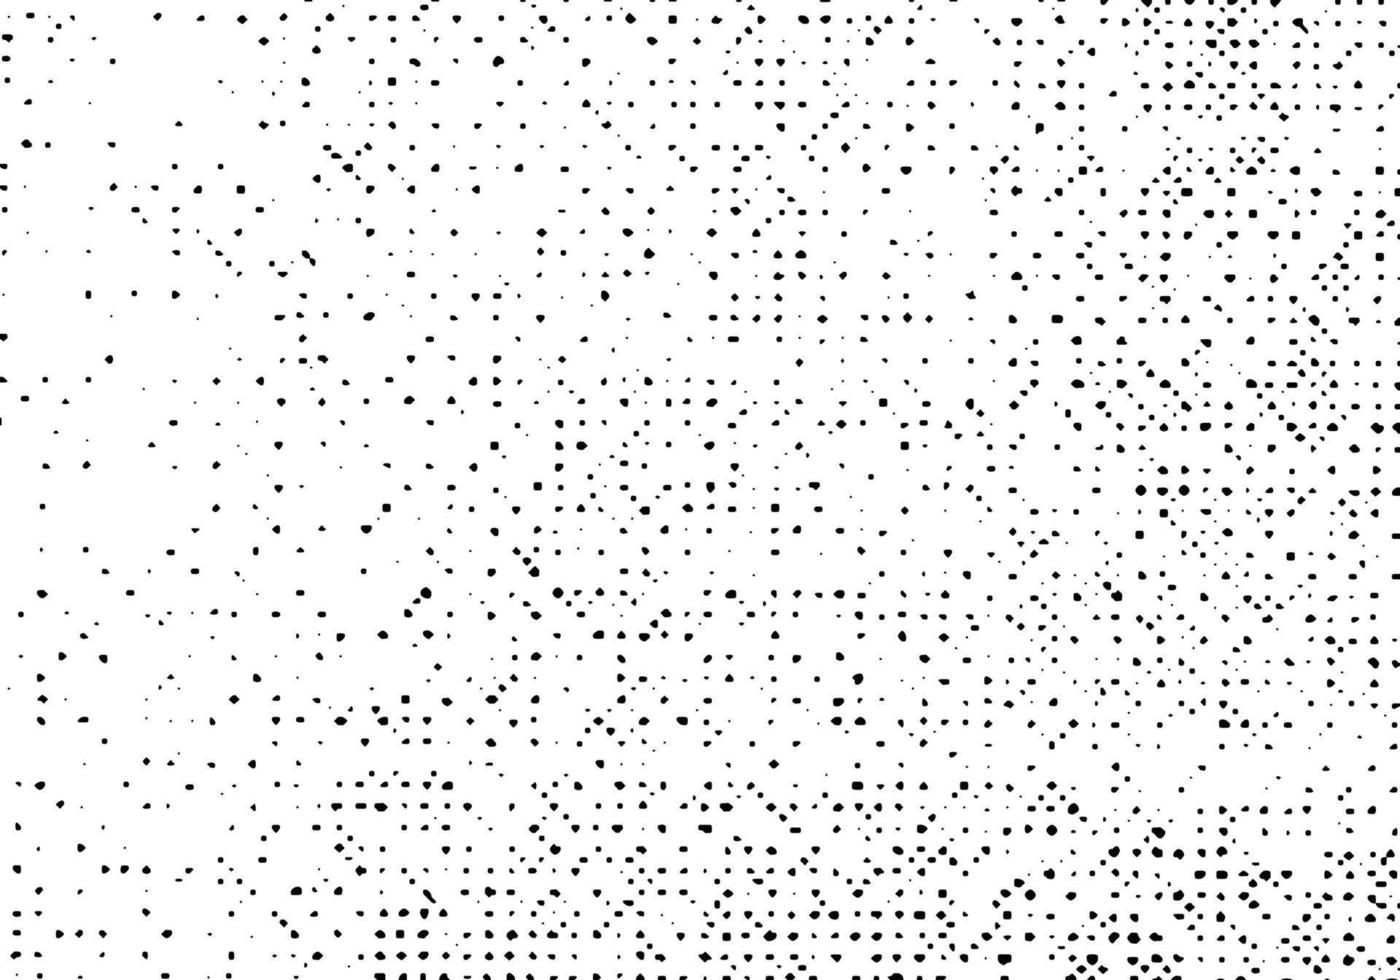 patrón de fondo grunge, viejo vector de superposición de textura de socorro, impresión monocromática de punto de semitono